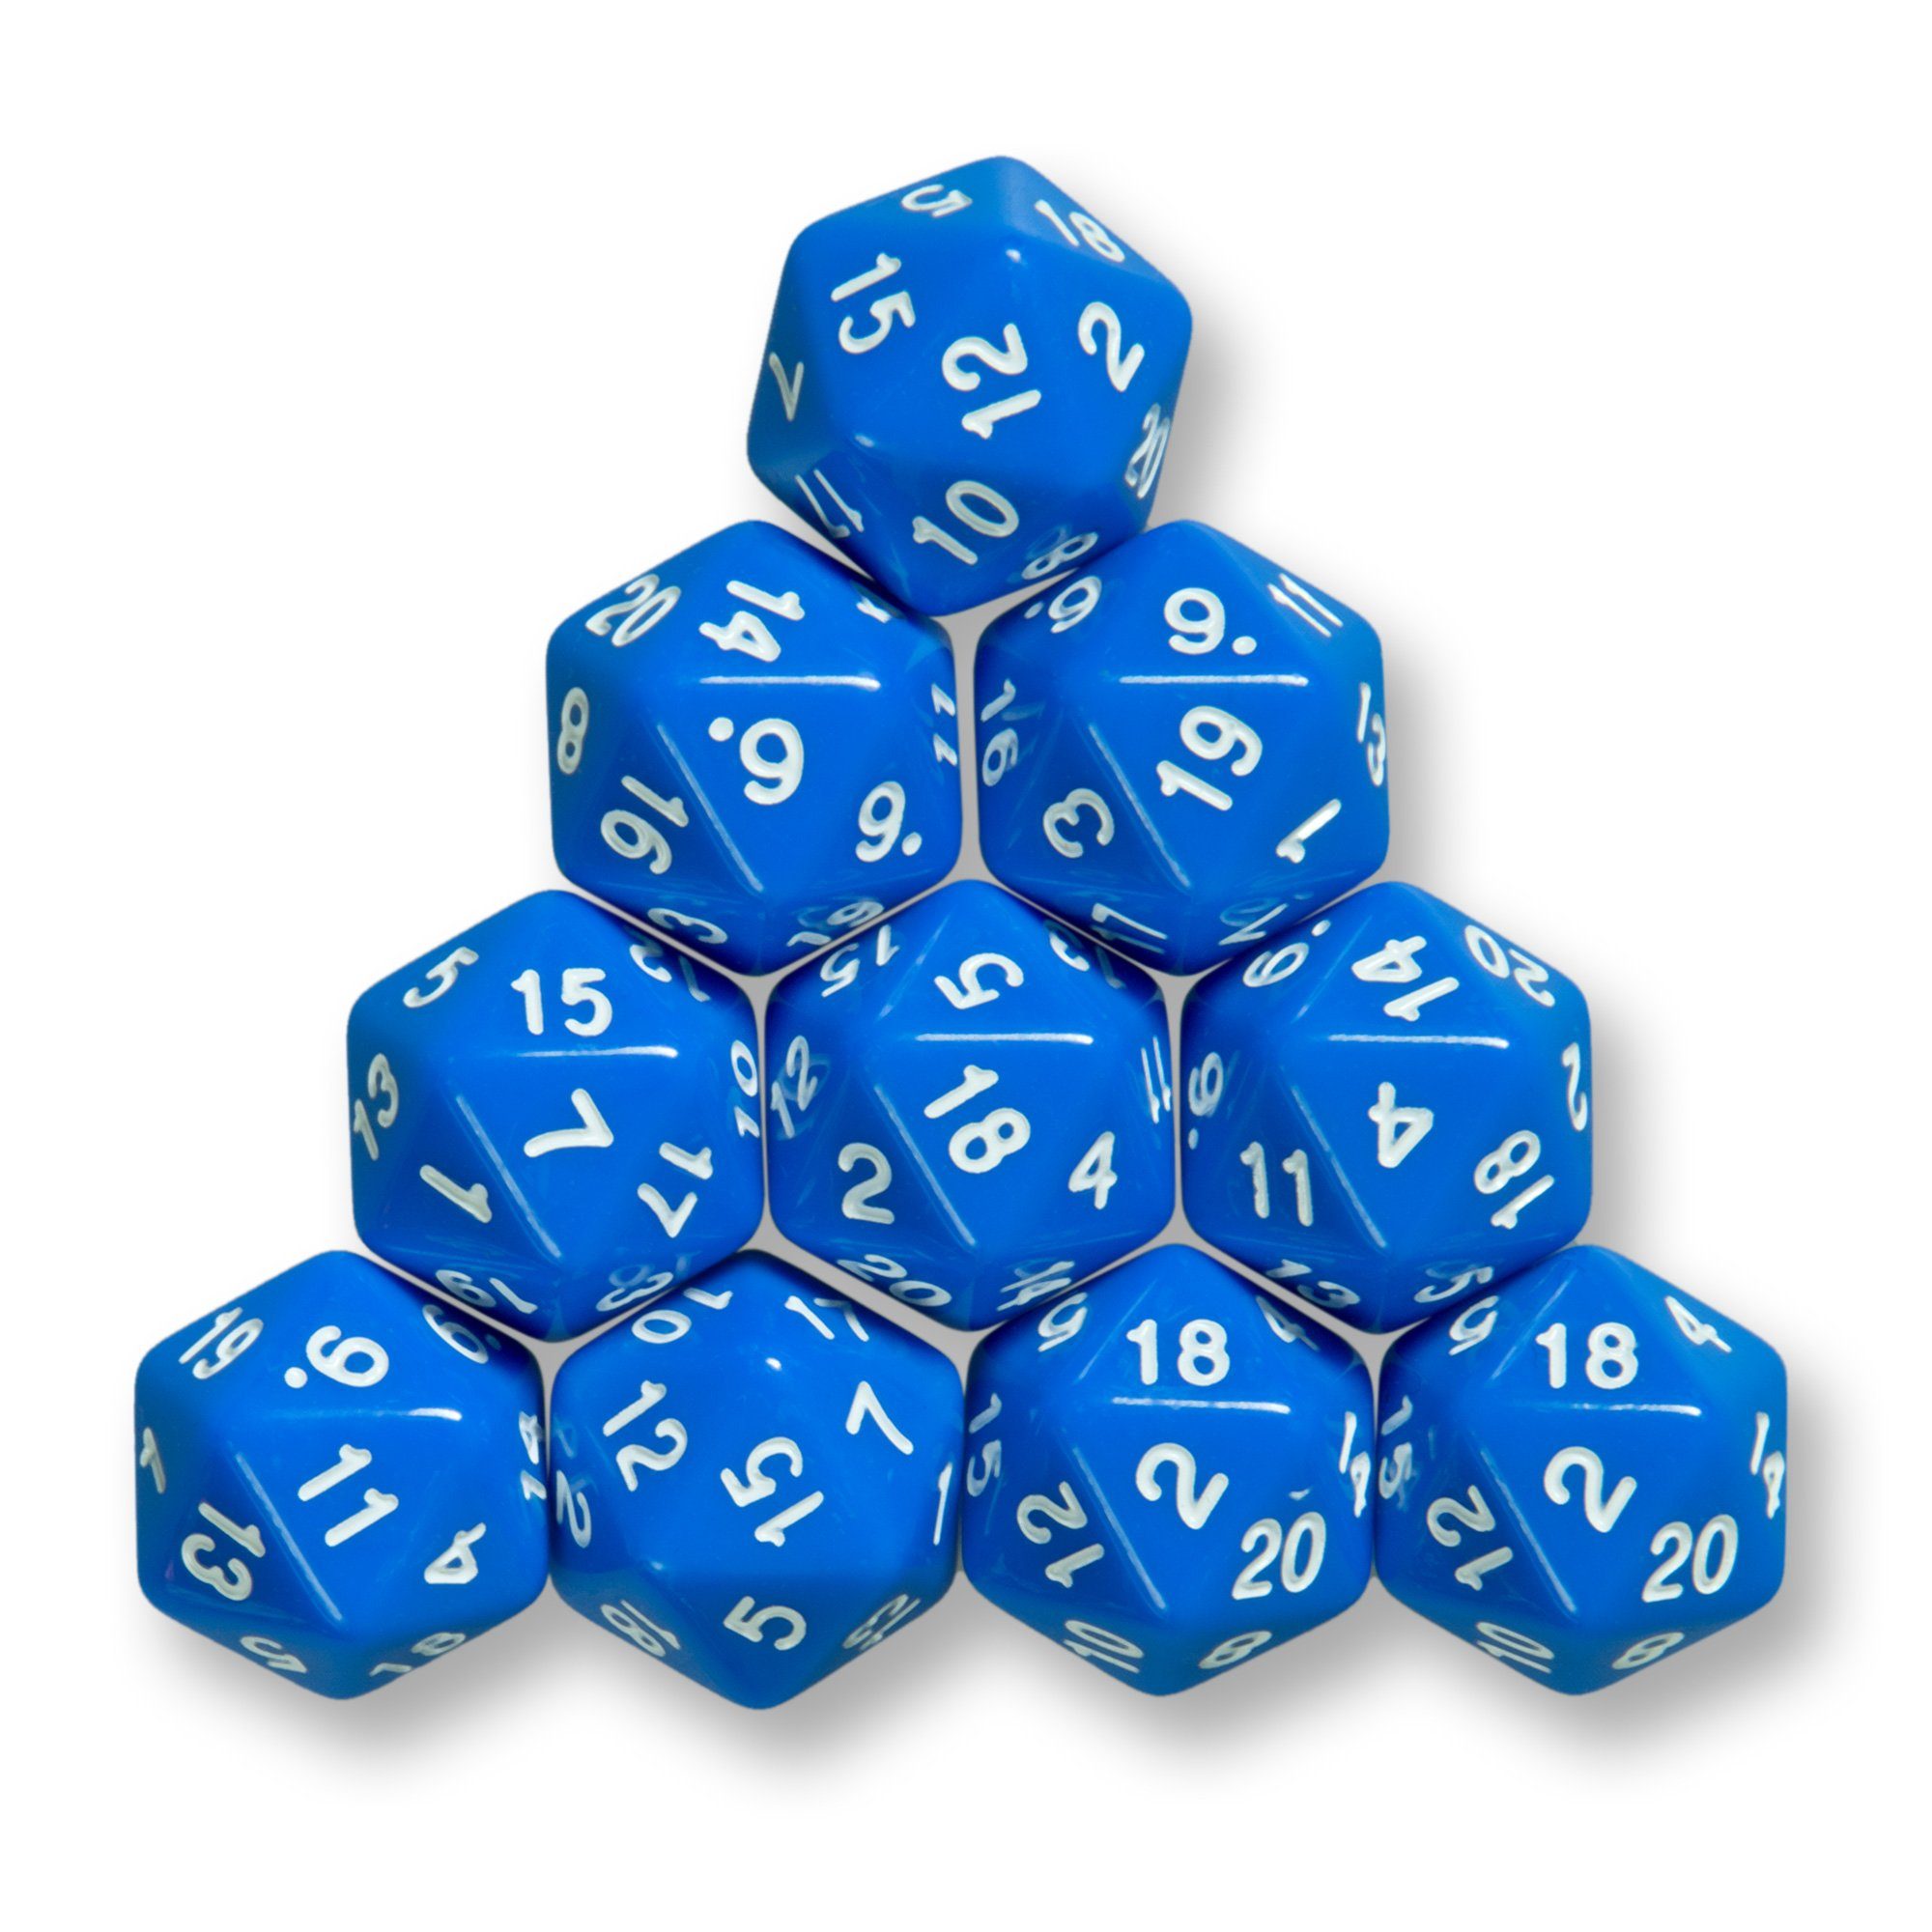 SHIBBY Spielesammlung, 10x polyedrische W20 Würfel für Rollen- und Tabletopspiele Blau | Würfelspiele